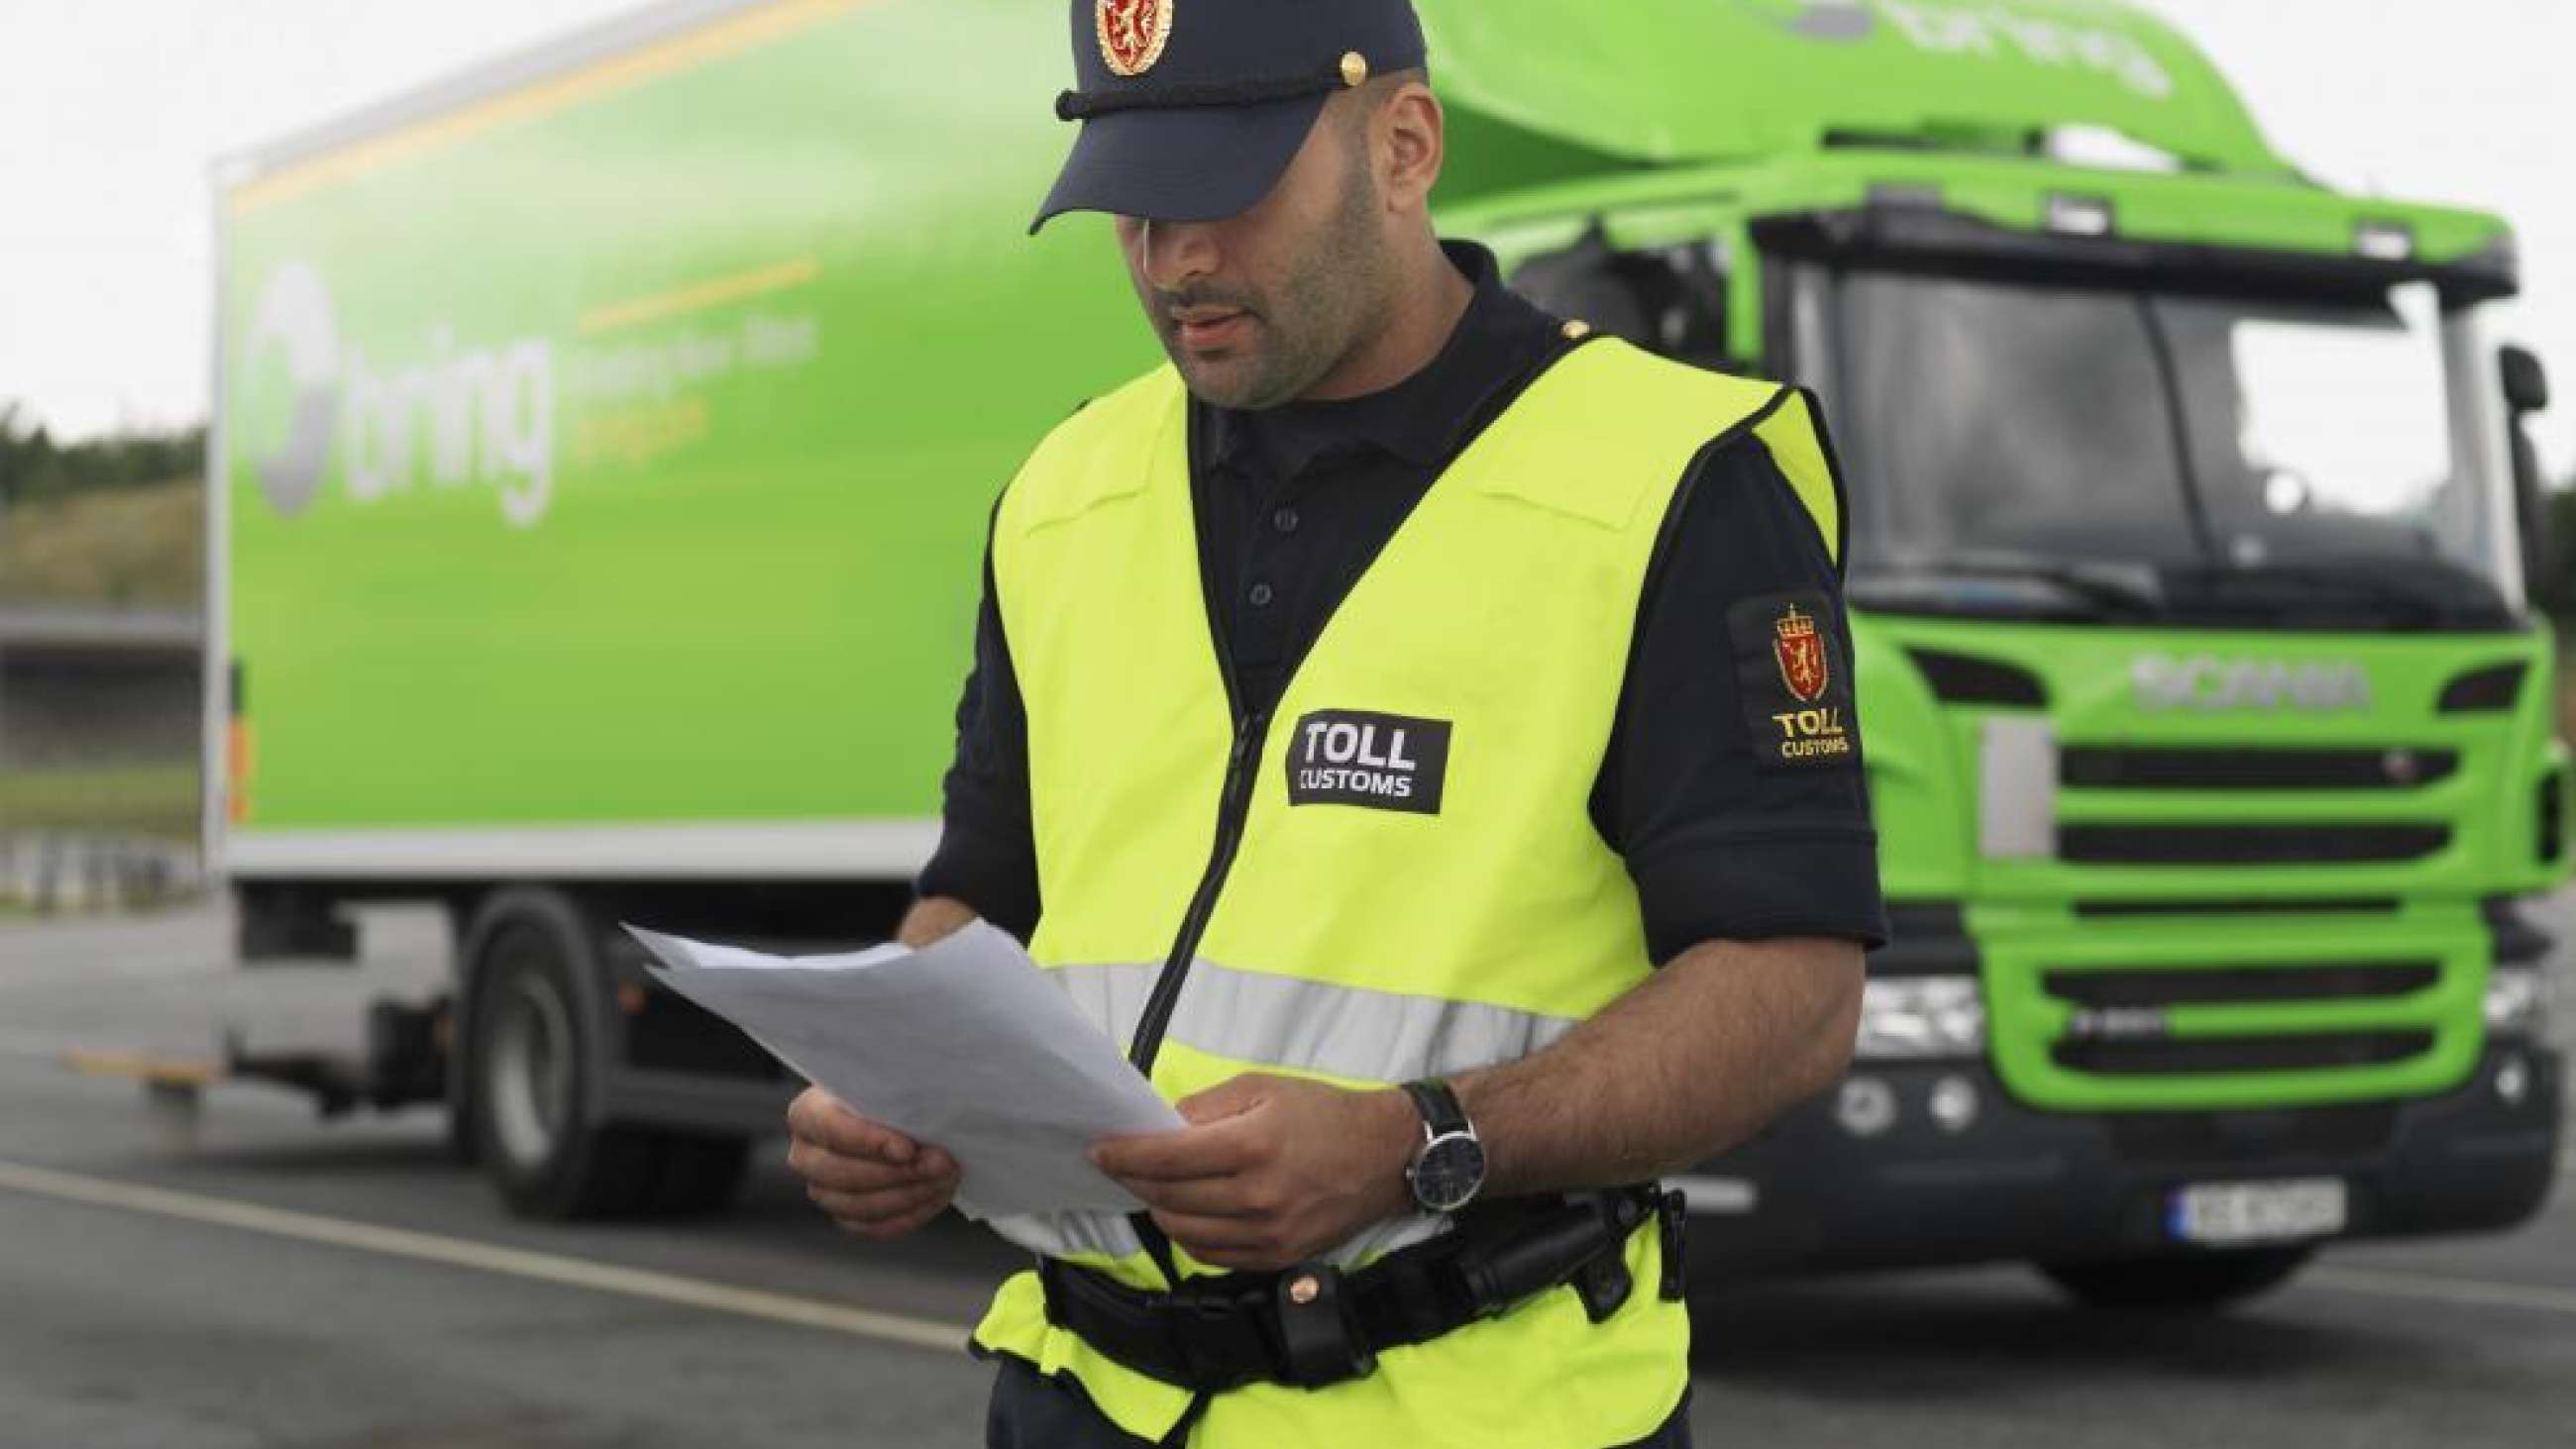 Tollansatt sjekker dokumenter foran en grønn lastebil fra Bring.